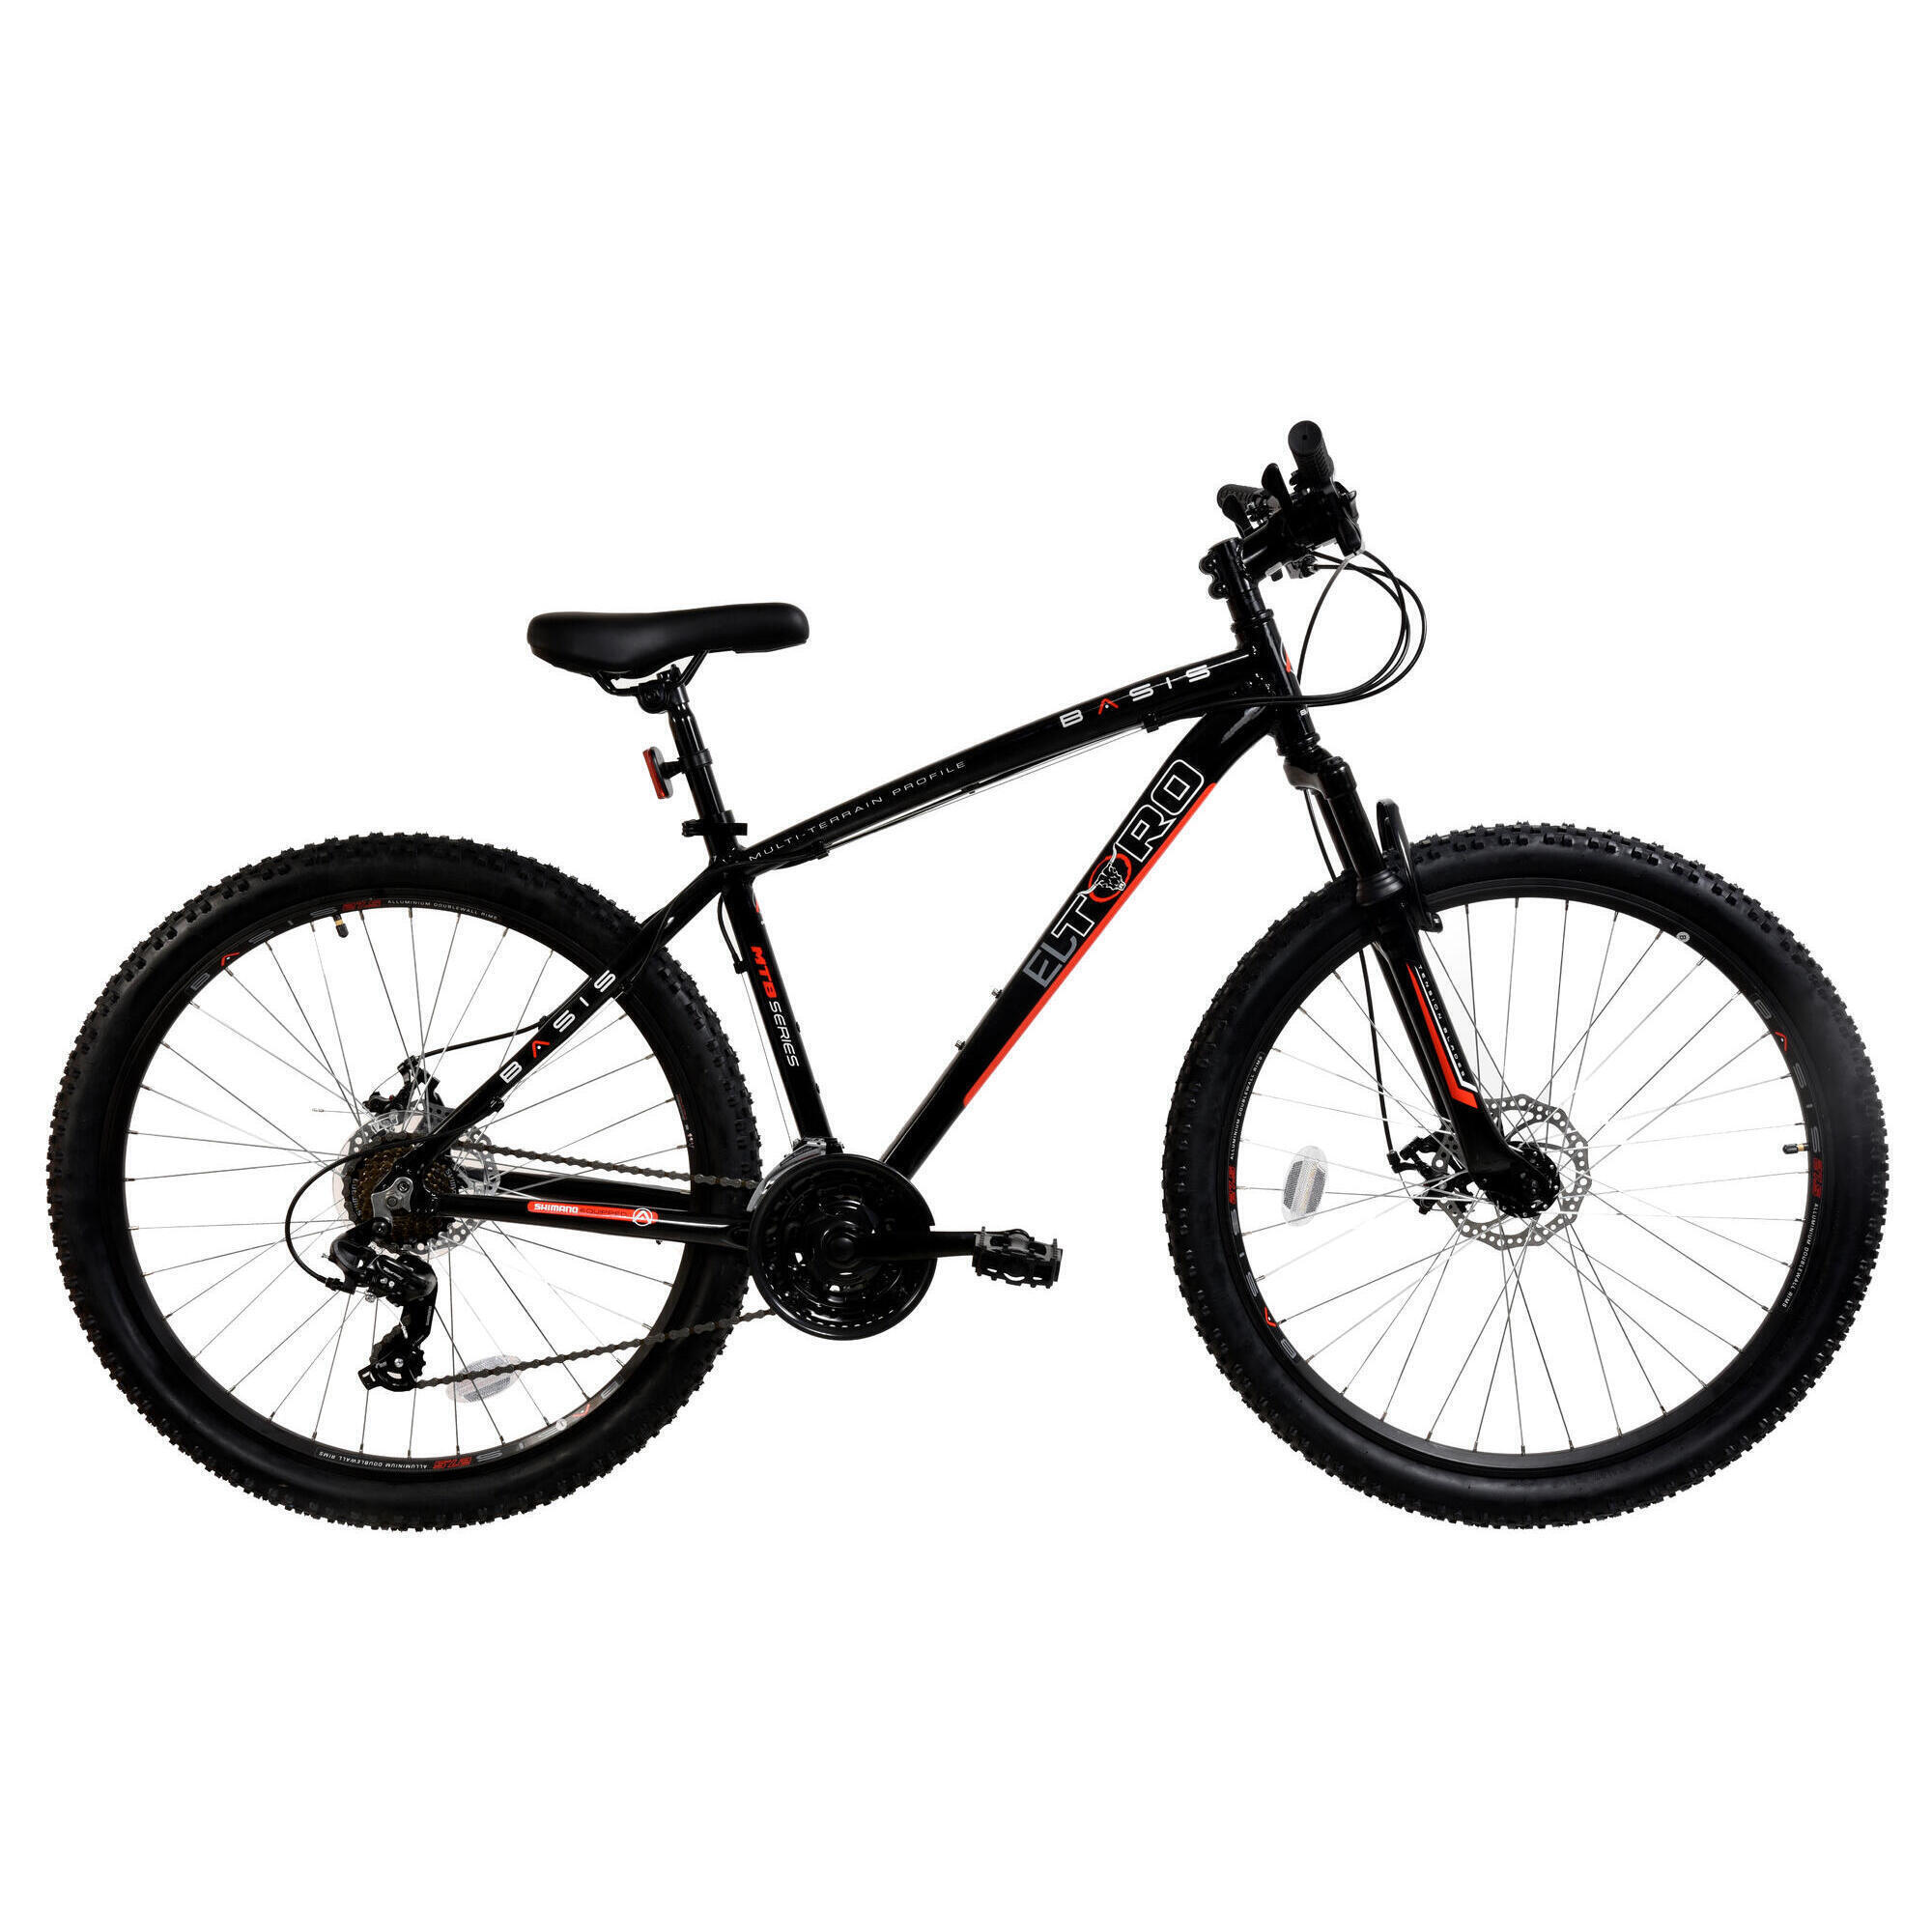 BASIS Basis El Toro Men's Hardtail Mountain Bike, 27.5In Wheel - Black/Red